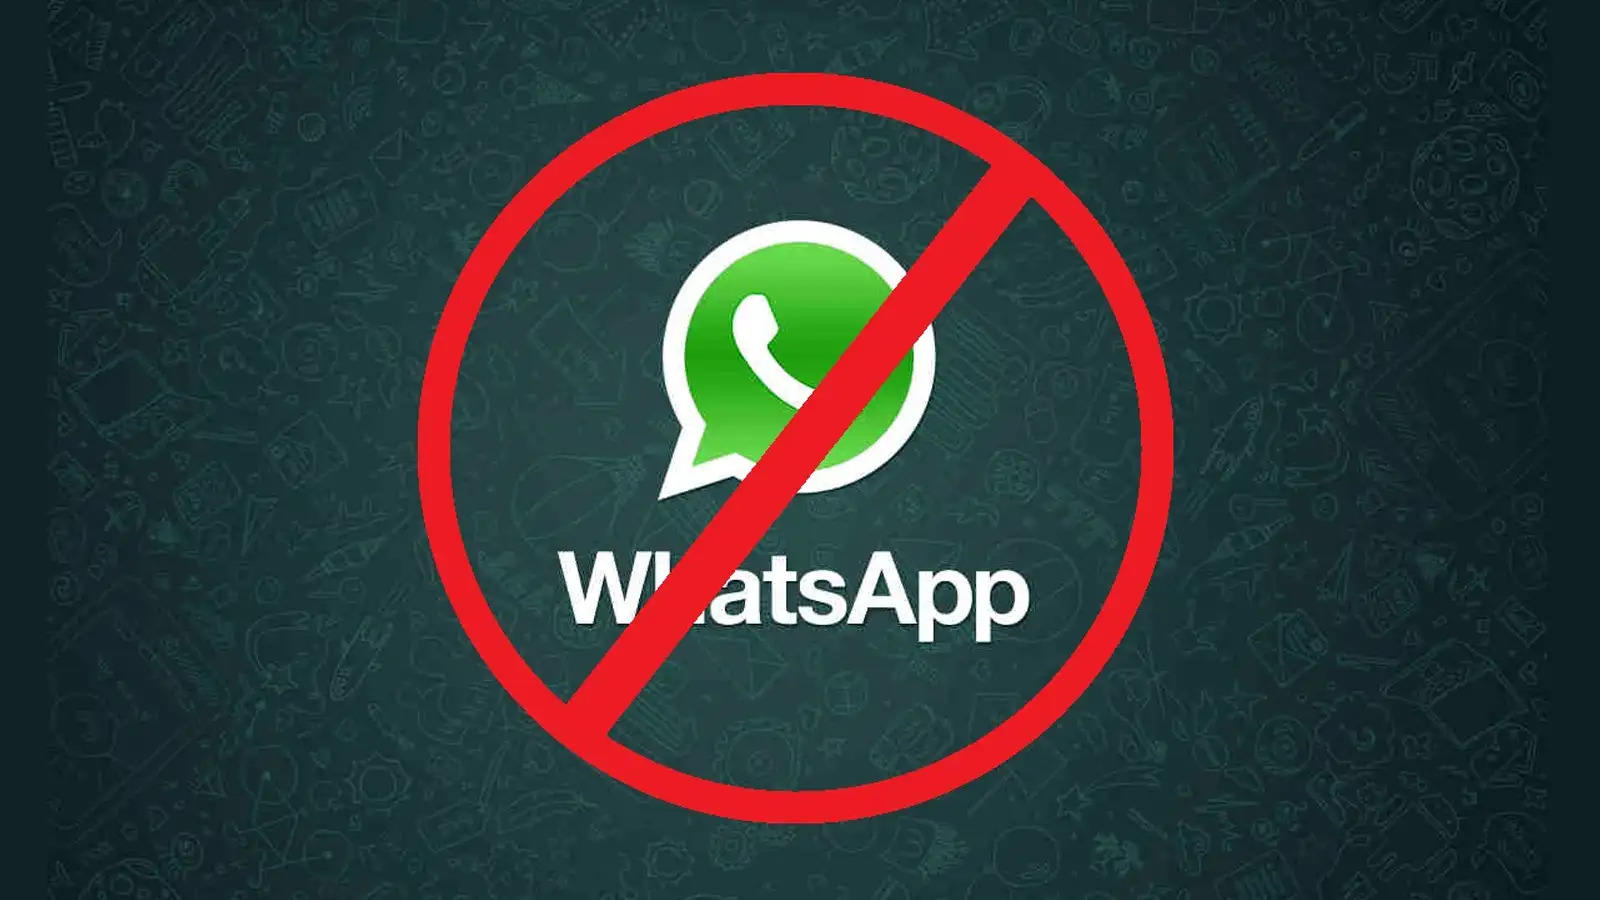 अगर आप भी कर रहे ये गलती तो हो जाएं सावधान, WhatsApp ने Ban किये 72 लाख से ज्यादा अकाउंट